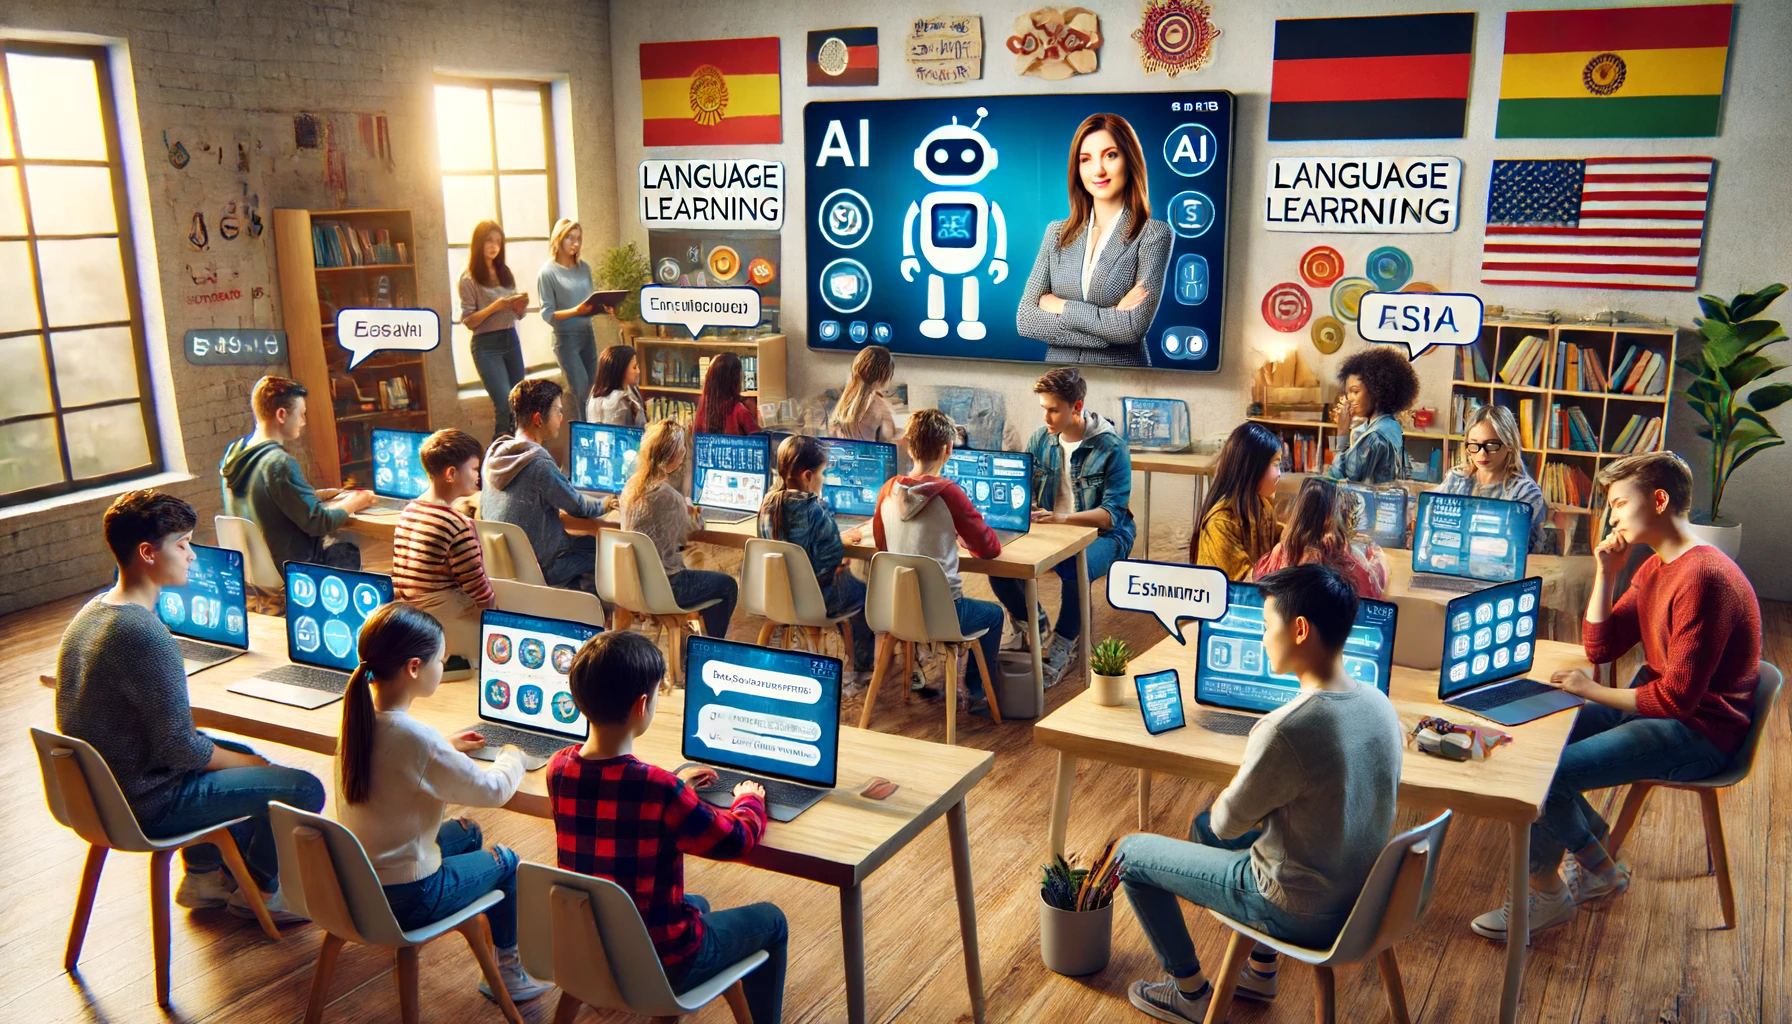 آموزش زبان با هوش مصنوعی: مزایا و معایب